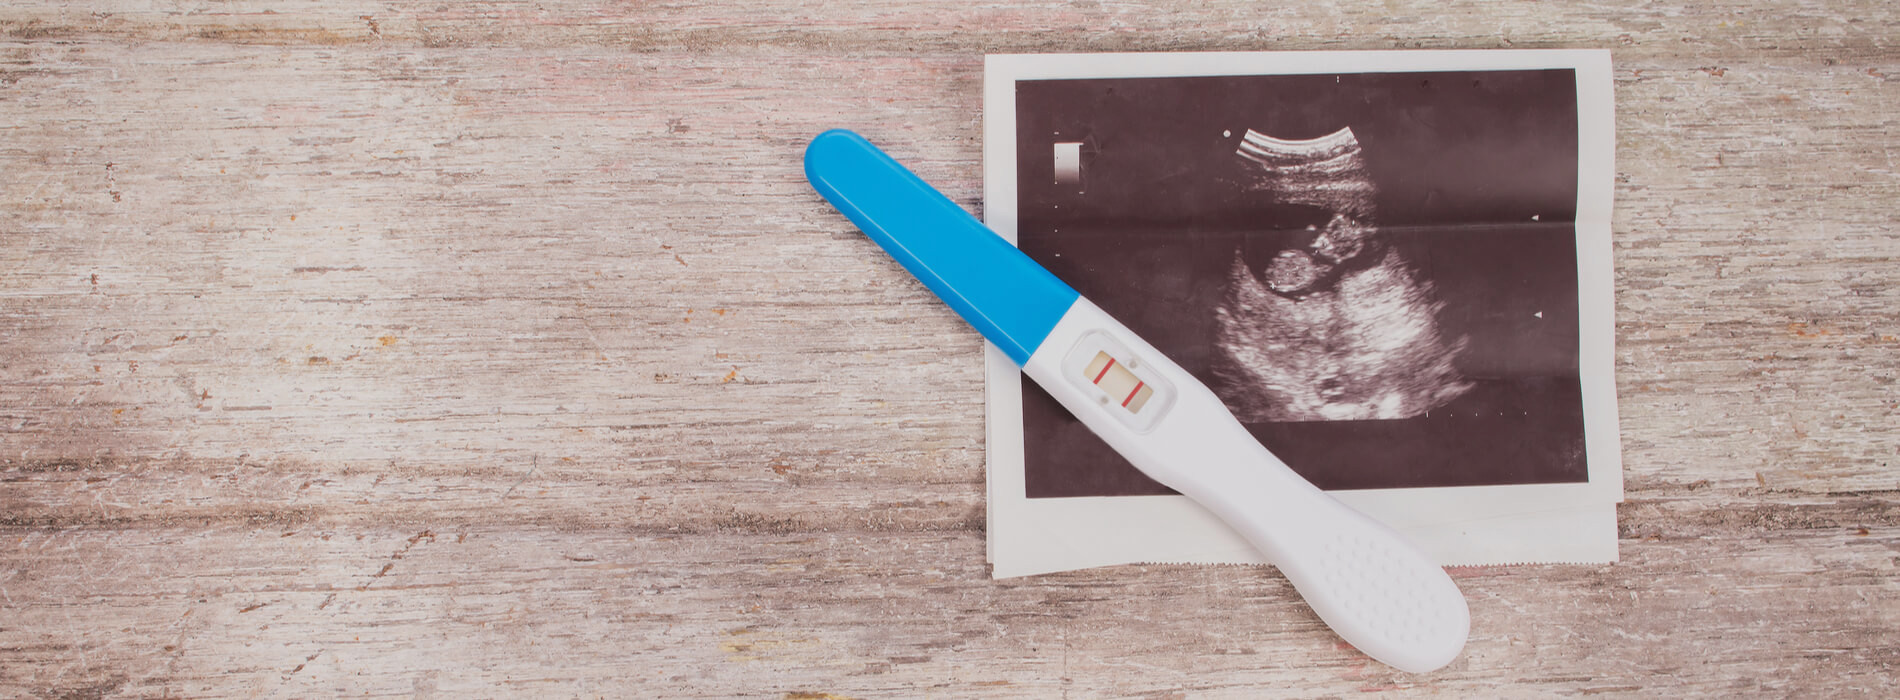 Objawy ciąży - po czym rozpoznać ciążę?